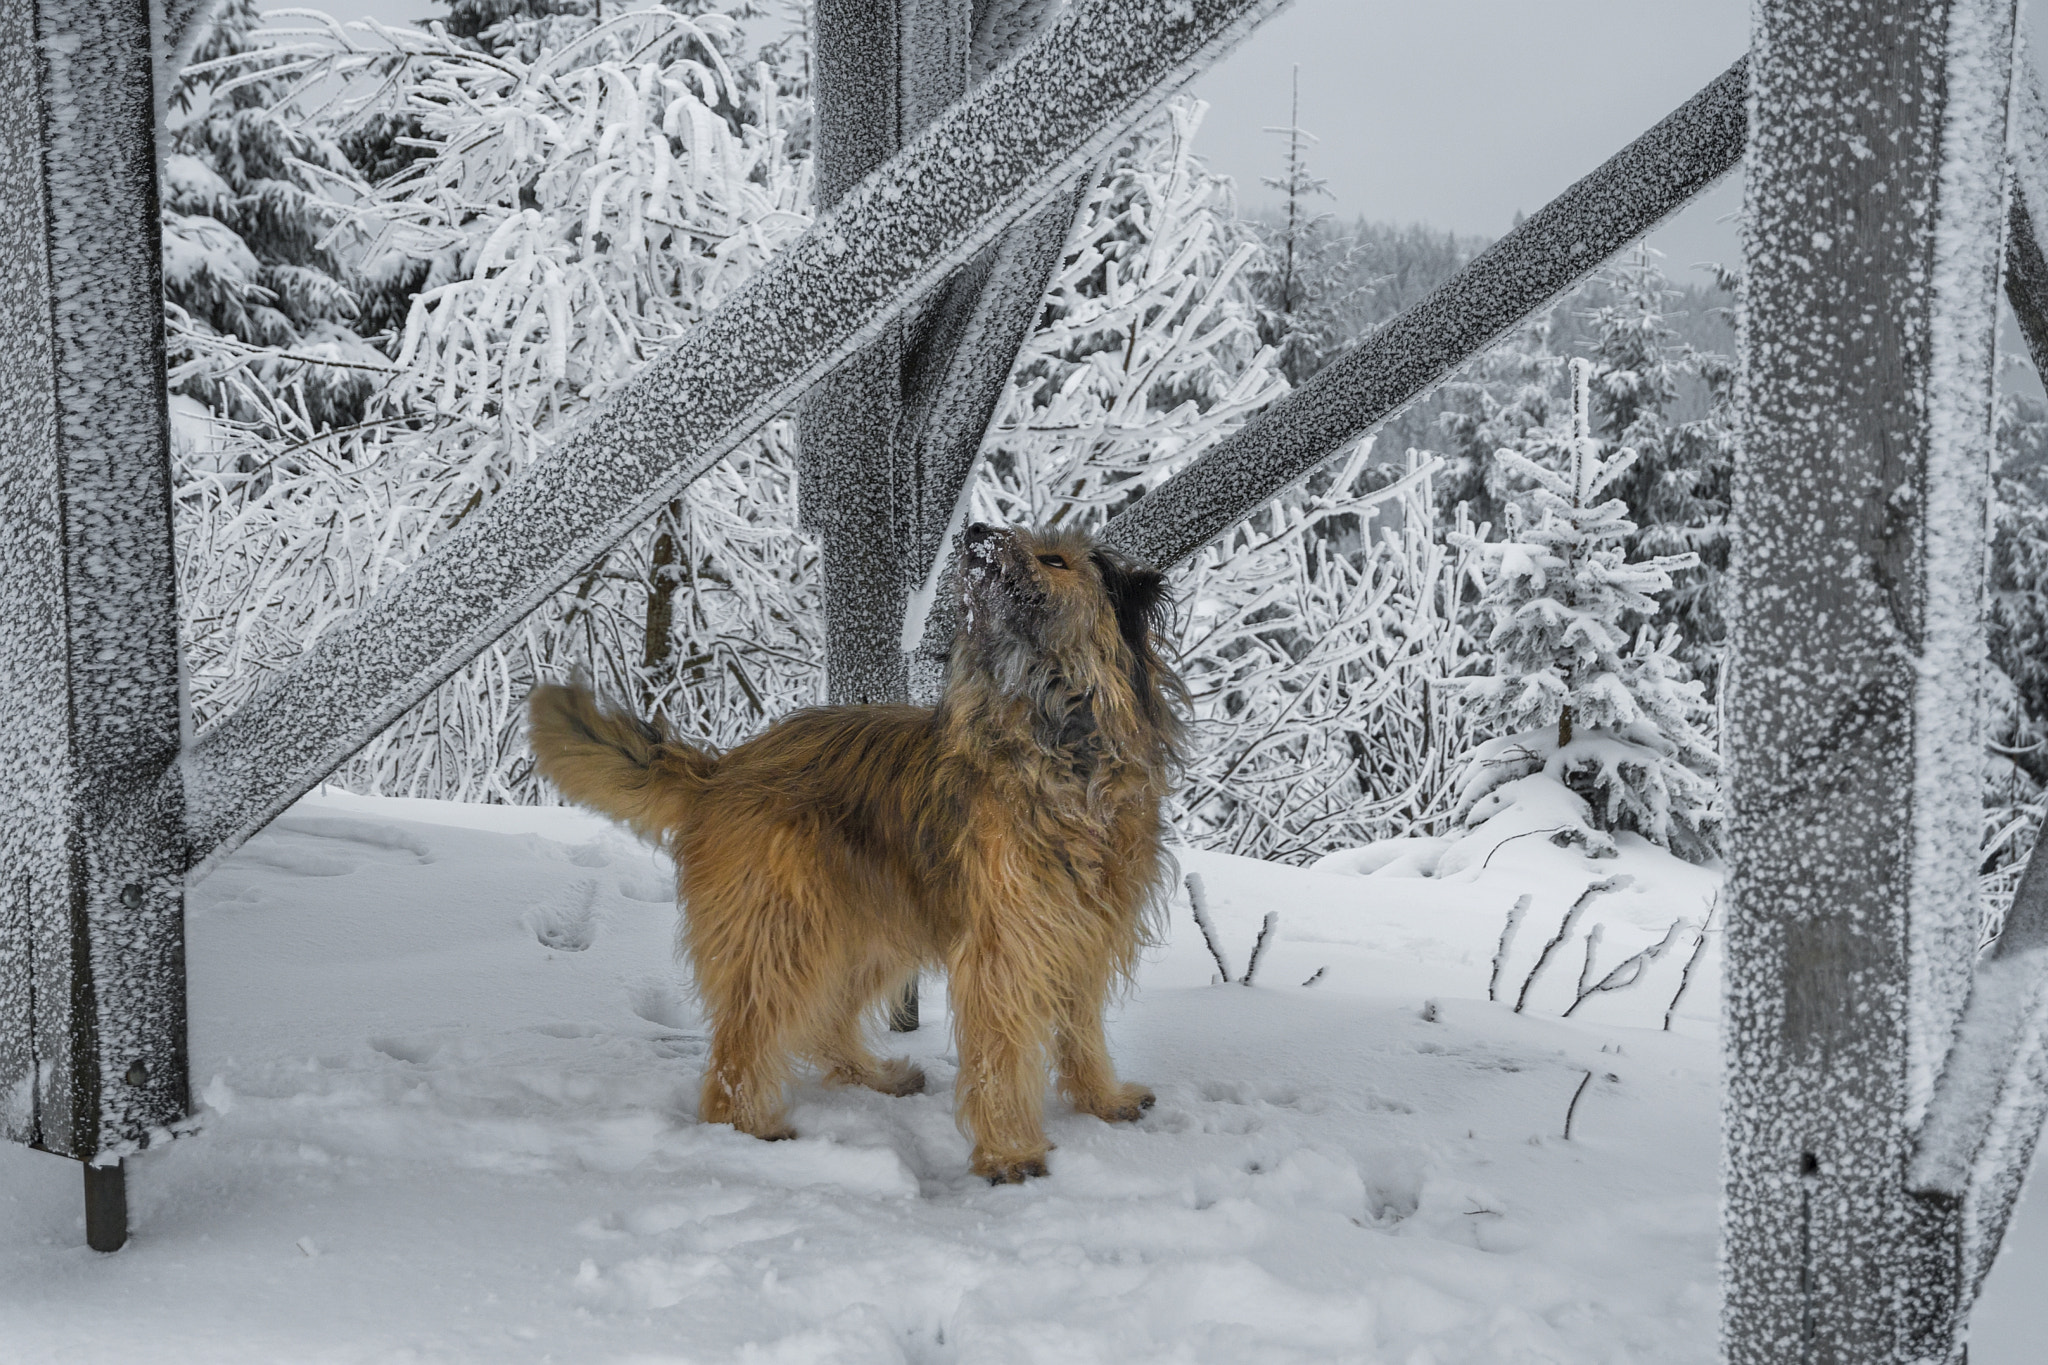 Nikon D500 + Nikon AF-S DX Nikkor 16-85mm F3.5-5.6G ED VR sample photo. ... dogs winter pleasures ... photography